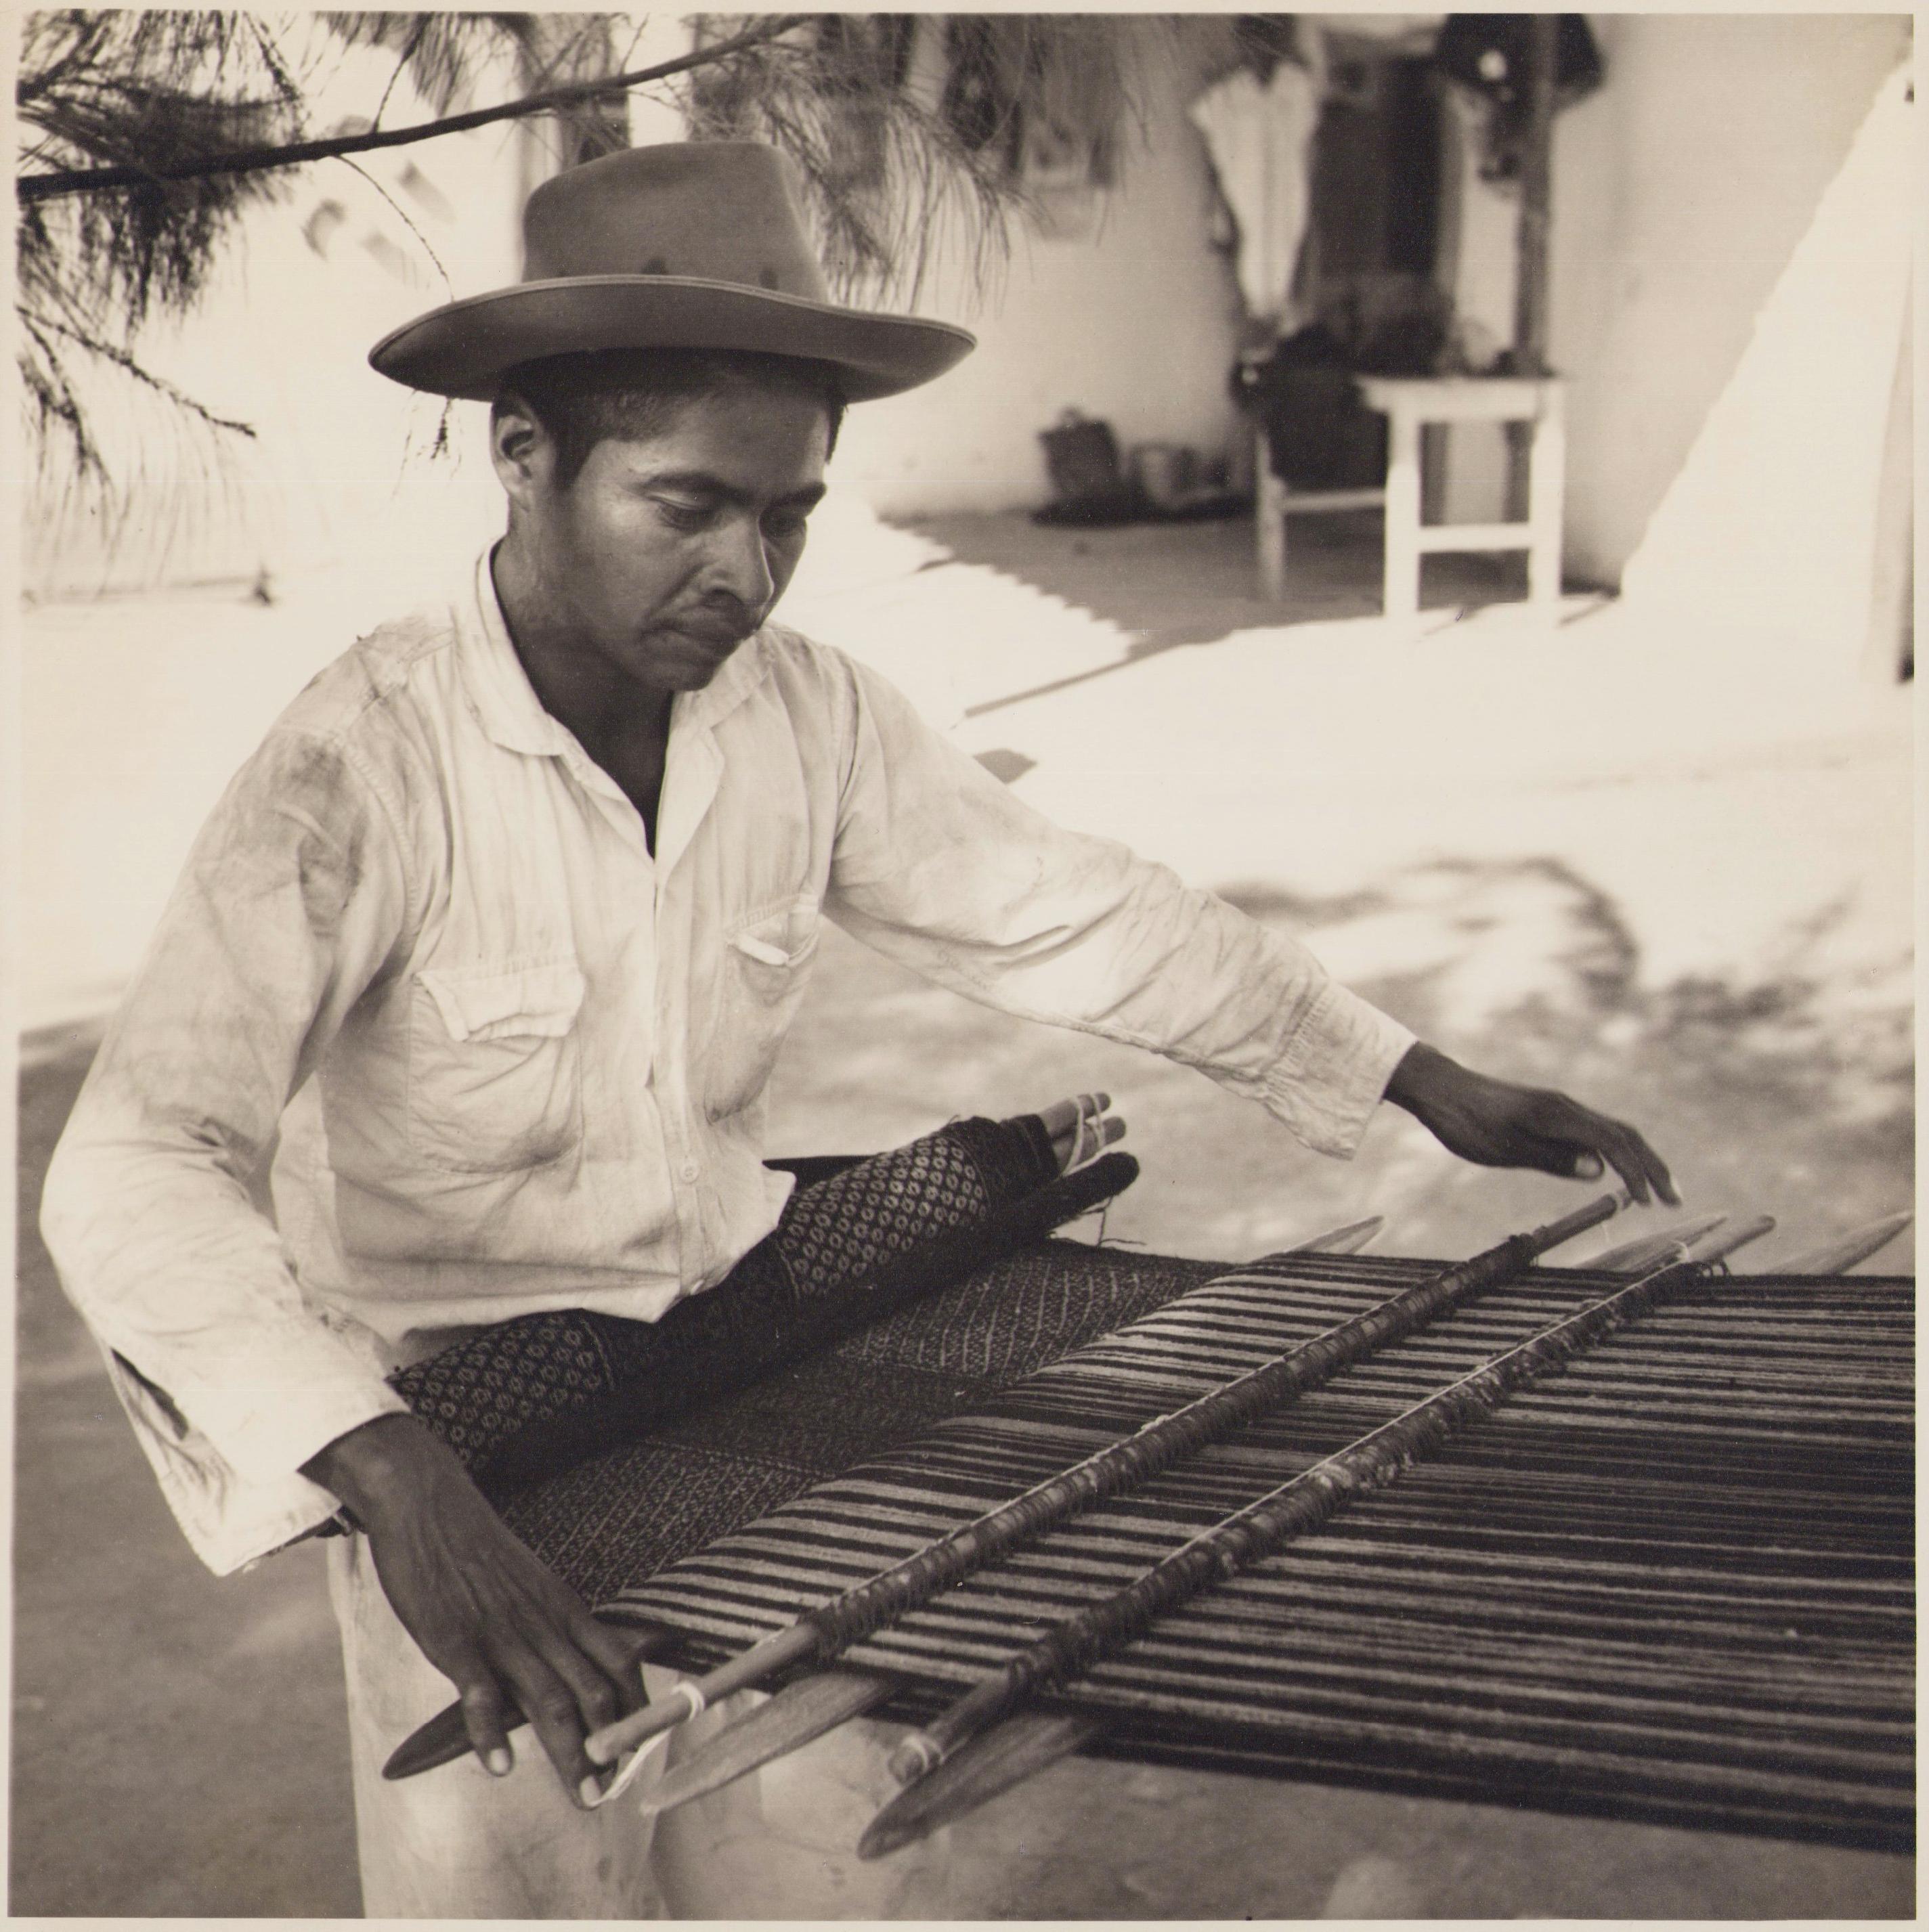 Hanna Seidel Black and White Photograph – Mexiko, Mann, Handarbeit, Schwarz-Weiß-Fotografie, 1960er Jahre, 24,2 x 24 cm